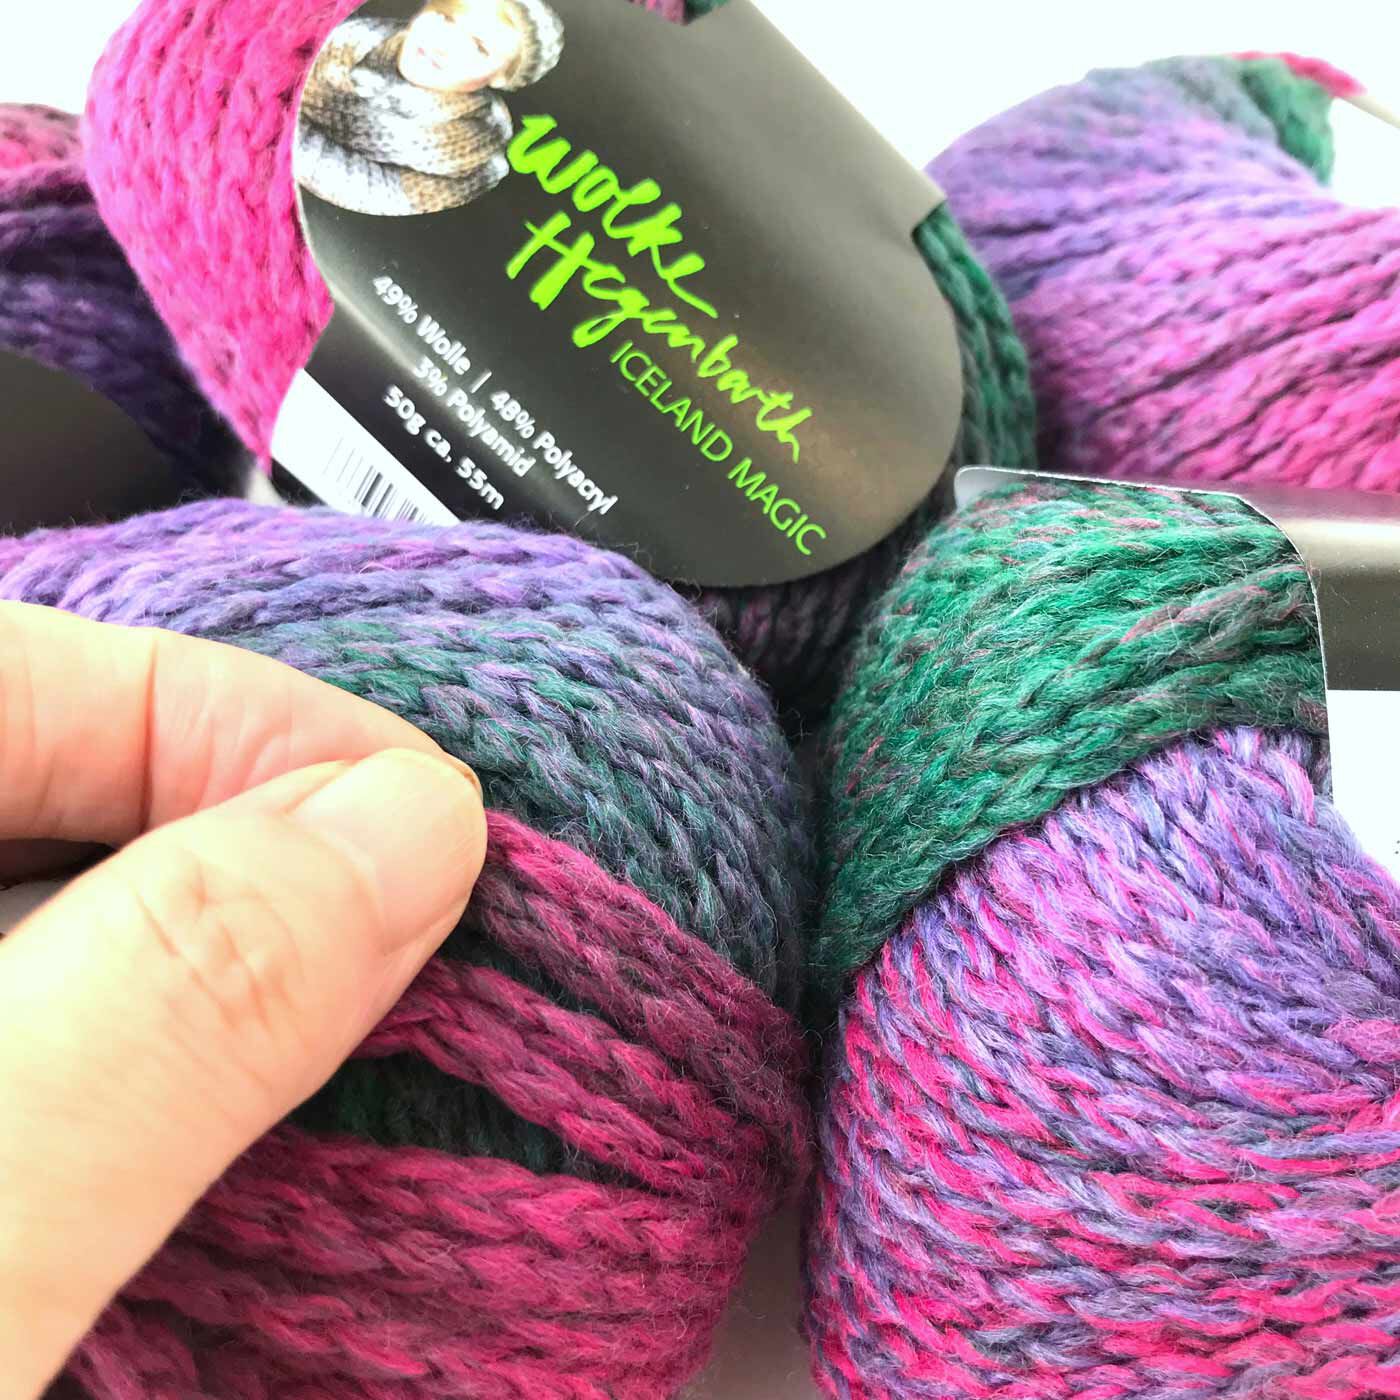 フェリシモの雑貨 Kraso|Iceland Magic　毛糸50g×5玉セット|8〜10mmのジャンボ針がおすすめの太い毛糸です。「i-cord（アイコード）」と呼ばれる、リリアンみたいな糸なので毛糸が割れないし、編み物が得意じゃないFuも、楽しくスイスイ編めました。初心者さんにもおすすめ。